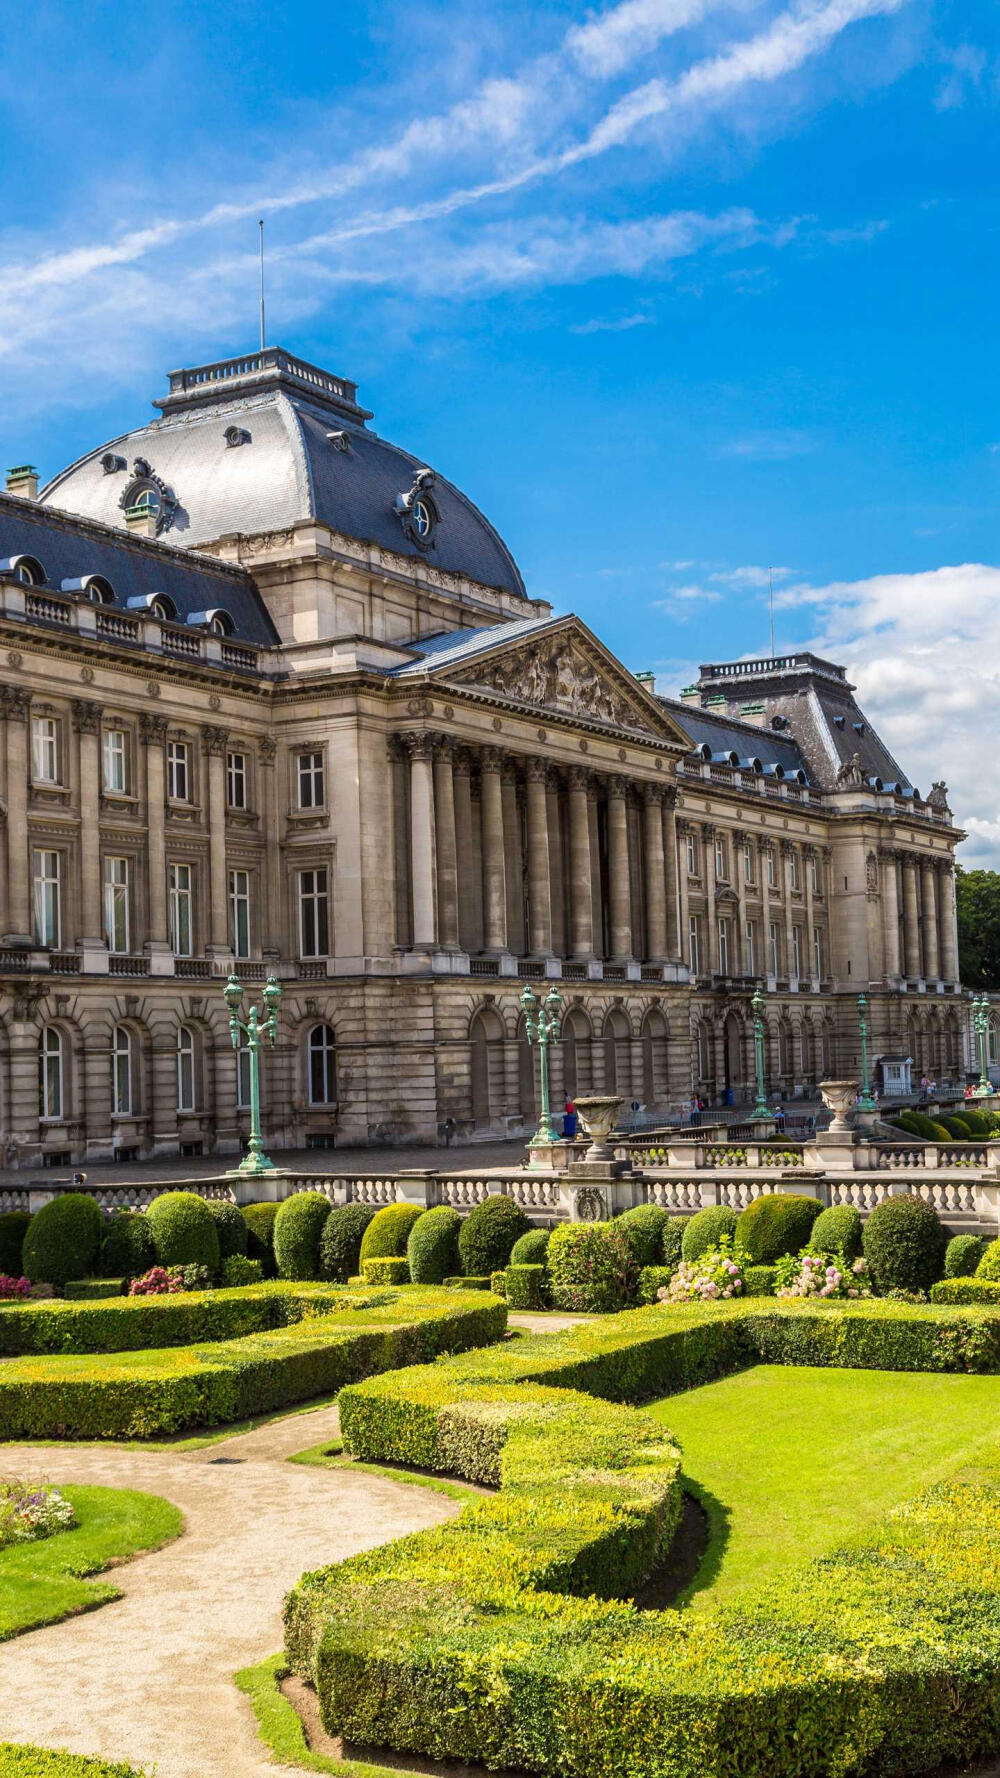 布鲁塞尔皇宫，比利时最雄伟的建筑，大理石的建筑上布满了浮雕，气势宏伟，十分壮观。©壹刻传媒